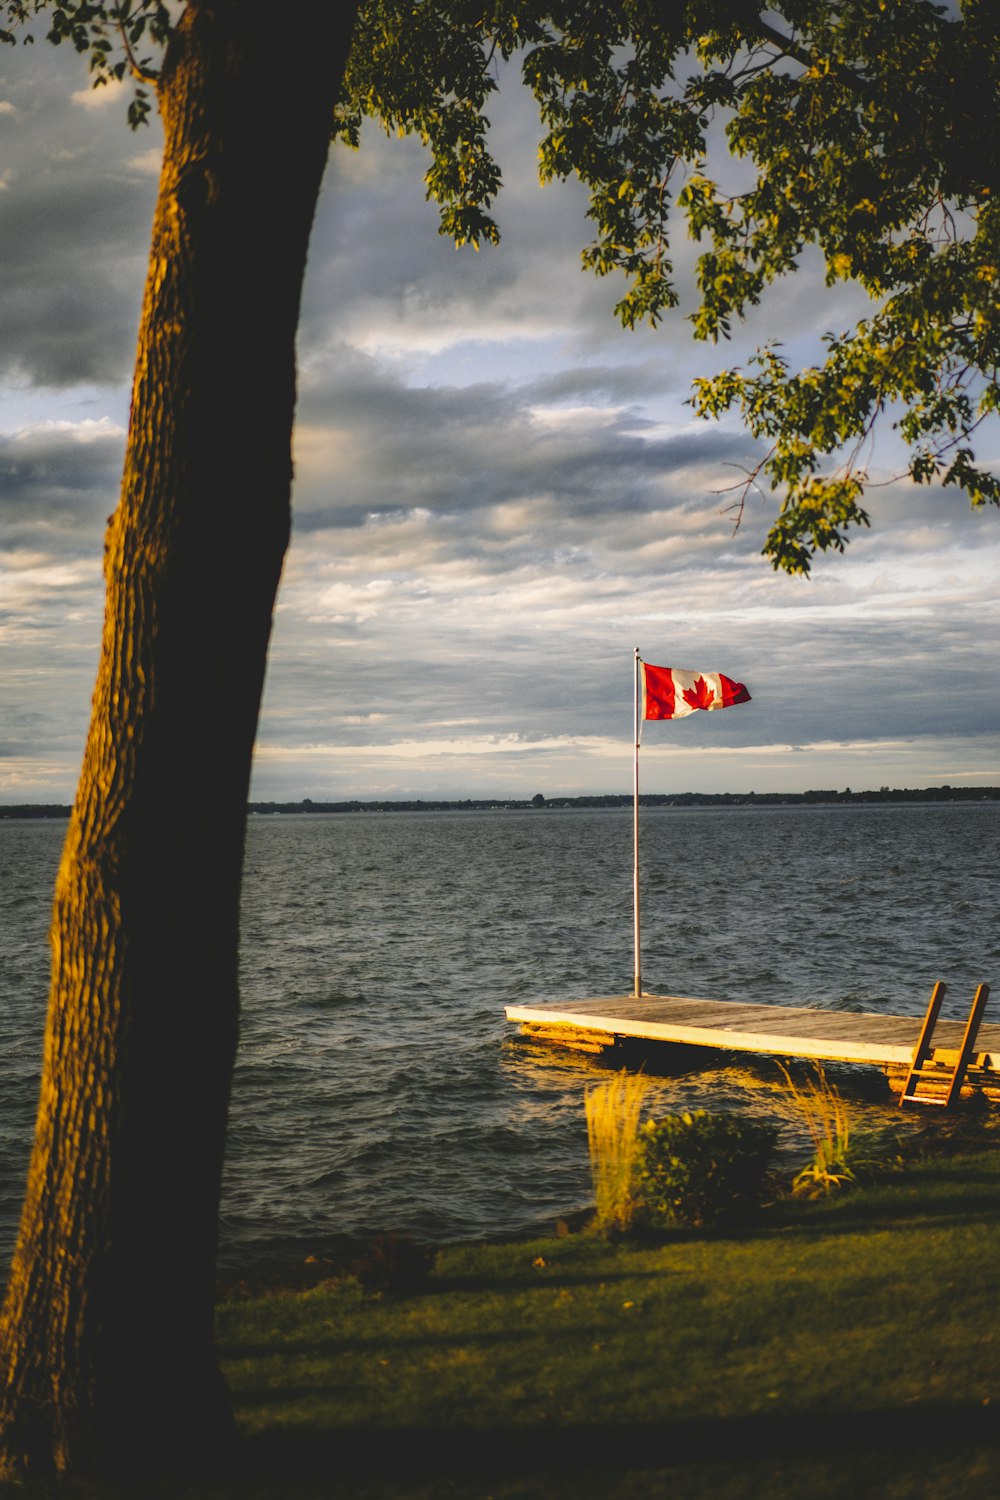 Bandiera del Canada issata sul molo grigio durante il giorno